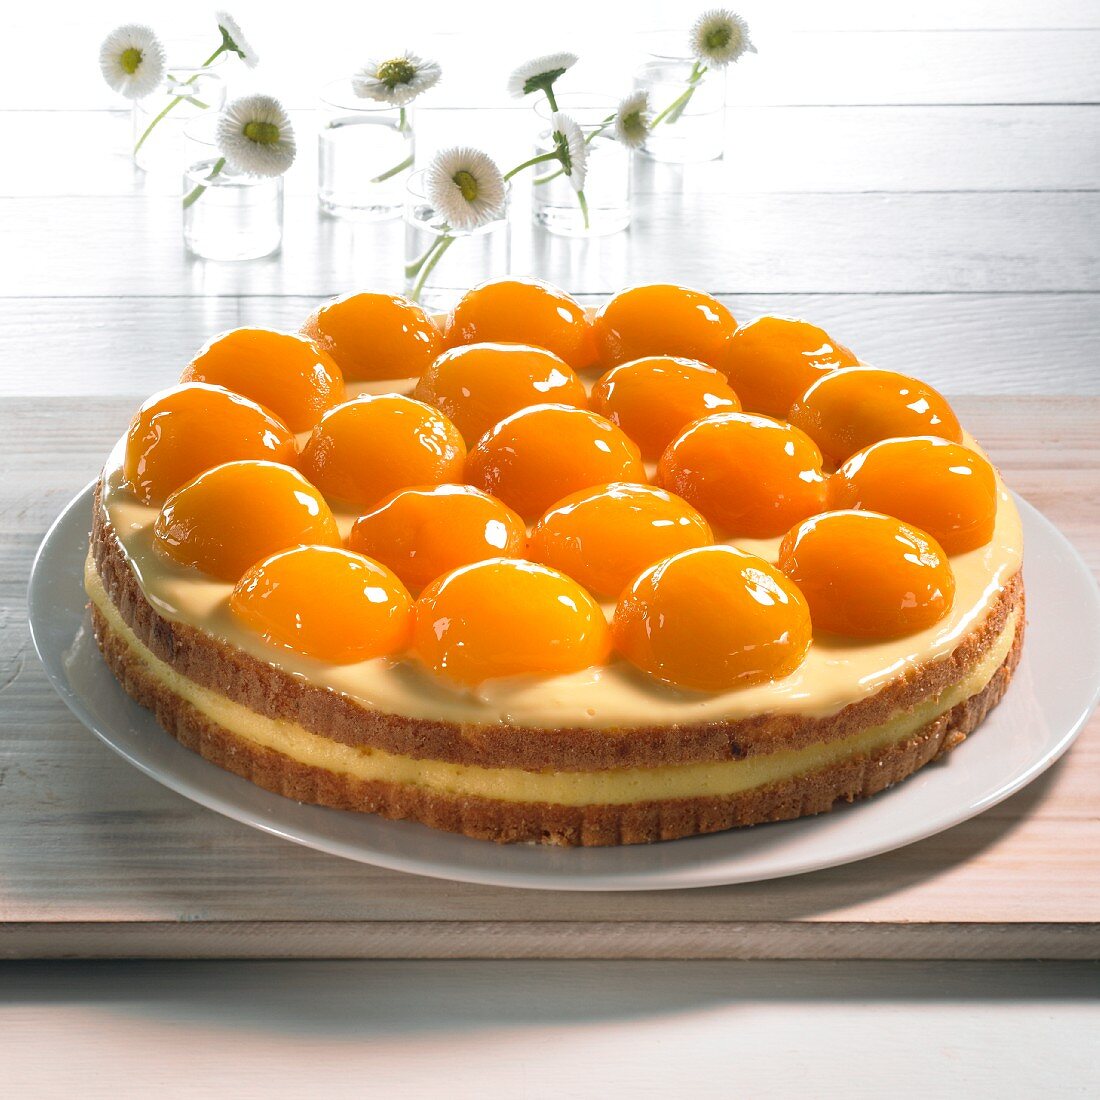 Apricot tart with vanilla cream